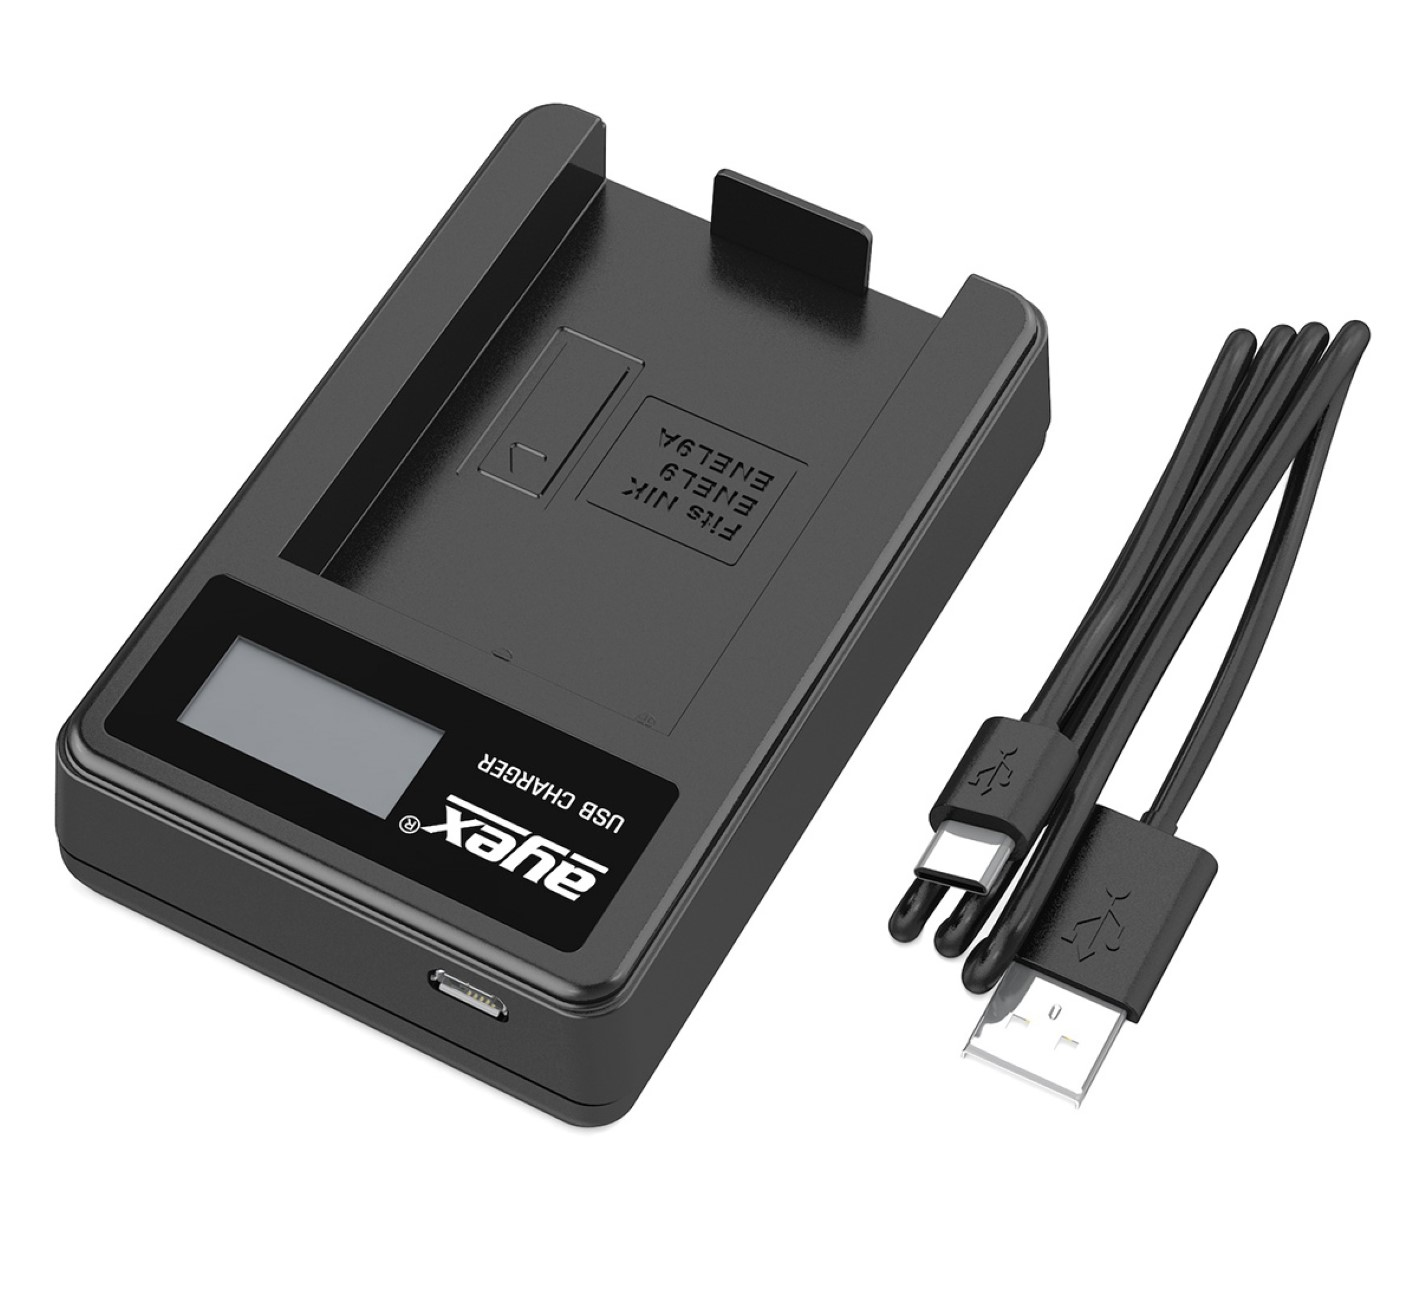 Ladegerät USB Black Akku, EN-EL9A EN-EL9 für Nikon Lader, AYEX Kamera-Akku